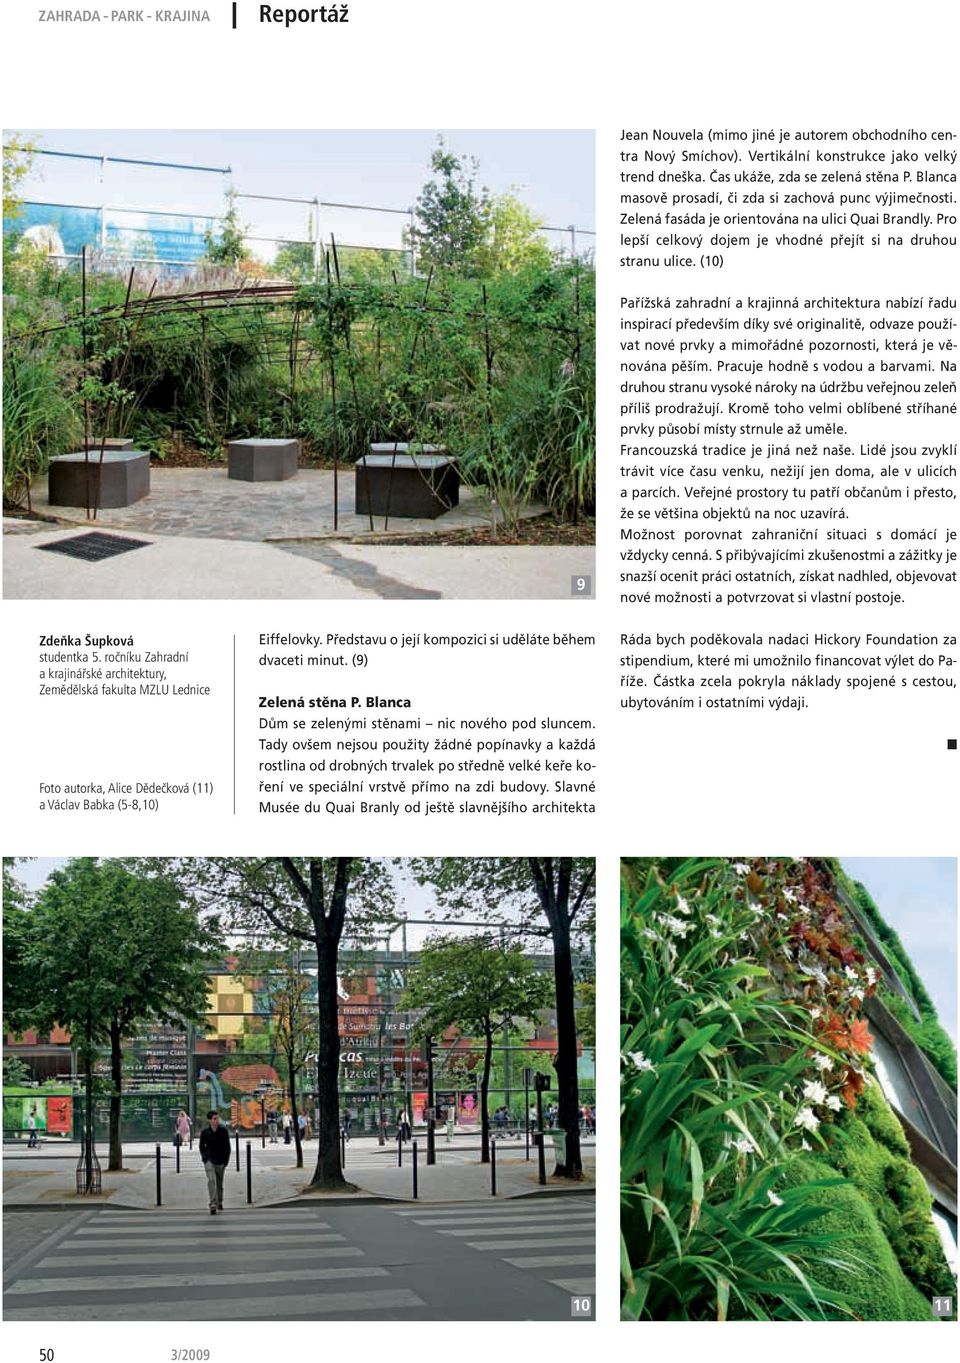 (10) 9 Pařížská zahradní a krajinná architektura nabízí řadu inspirací především díky své originalitě, odvaze používat nové prvky a mimořádné pozornosti, která je věnována pěším.